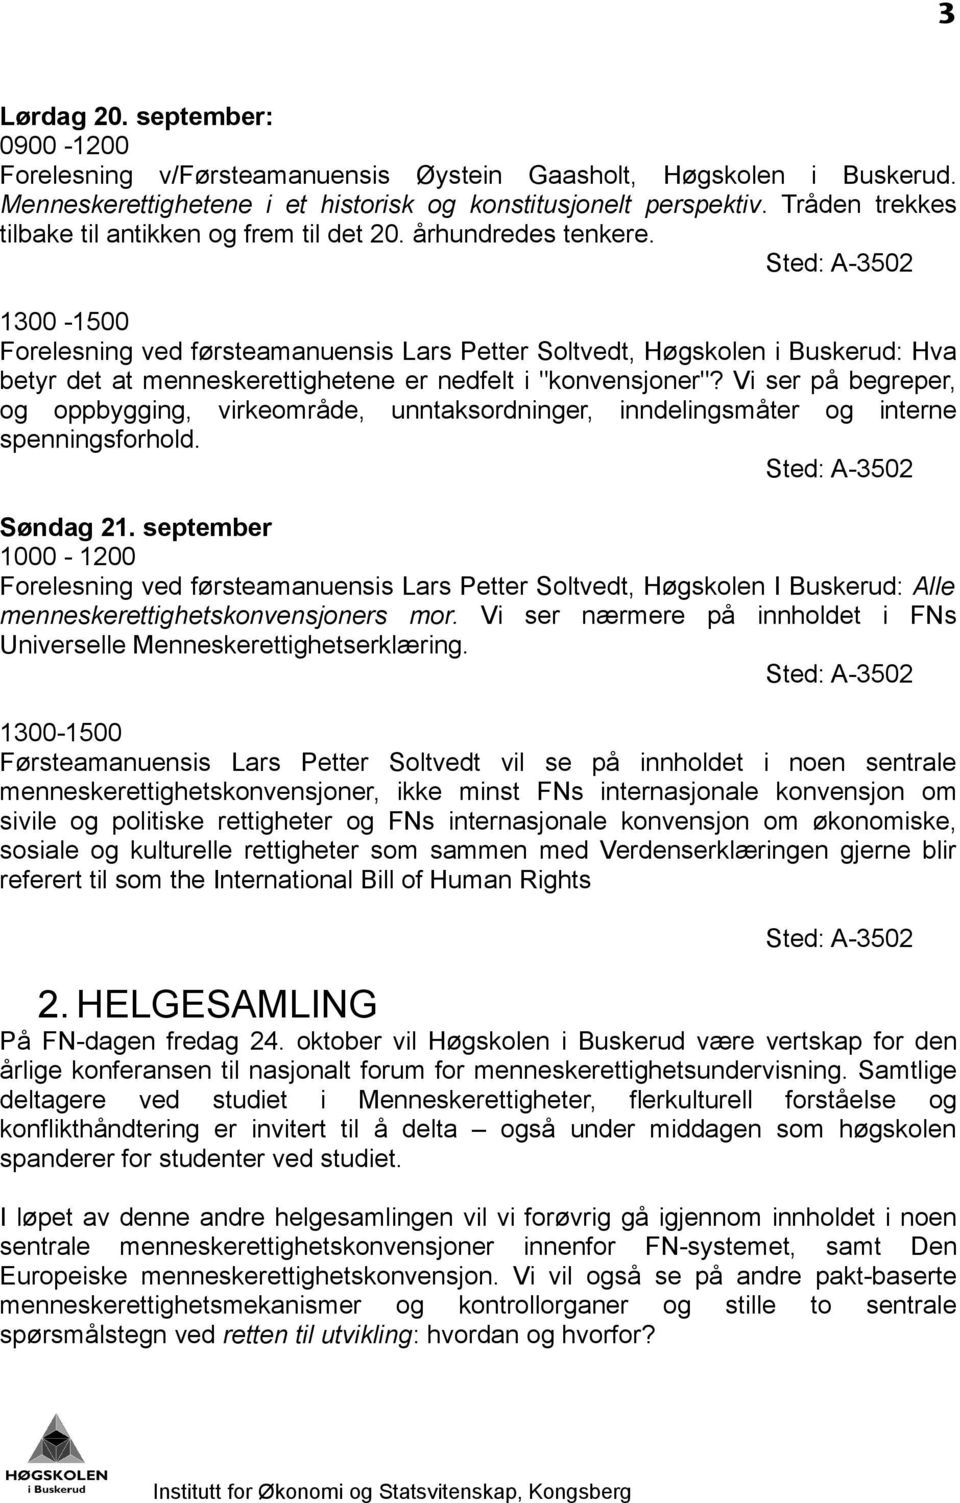 1300-1500 Forelesning ved førsteamanuensis Lars Petter Soltvedt, Høgskolen i Buskerud: Hva betyr det at menneskerettighetene er nedfelt i "konvensjoner"?